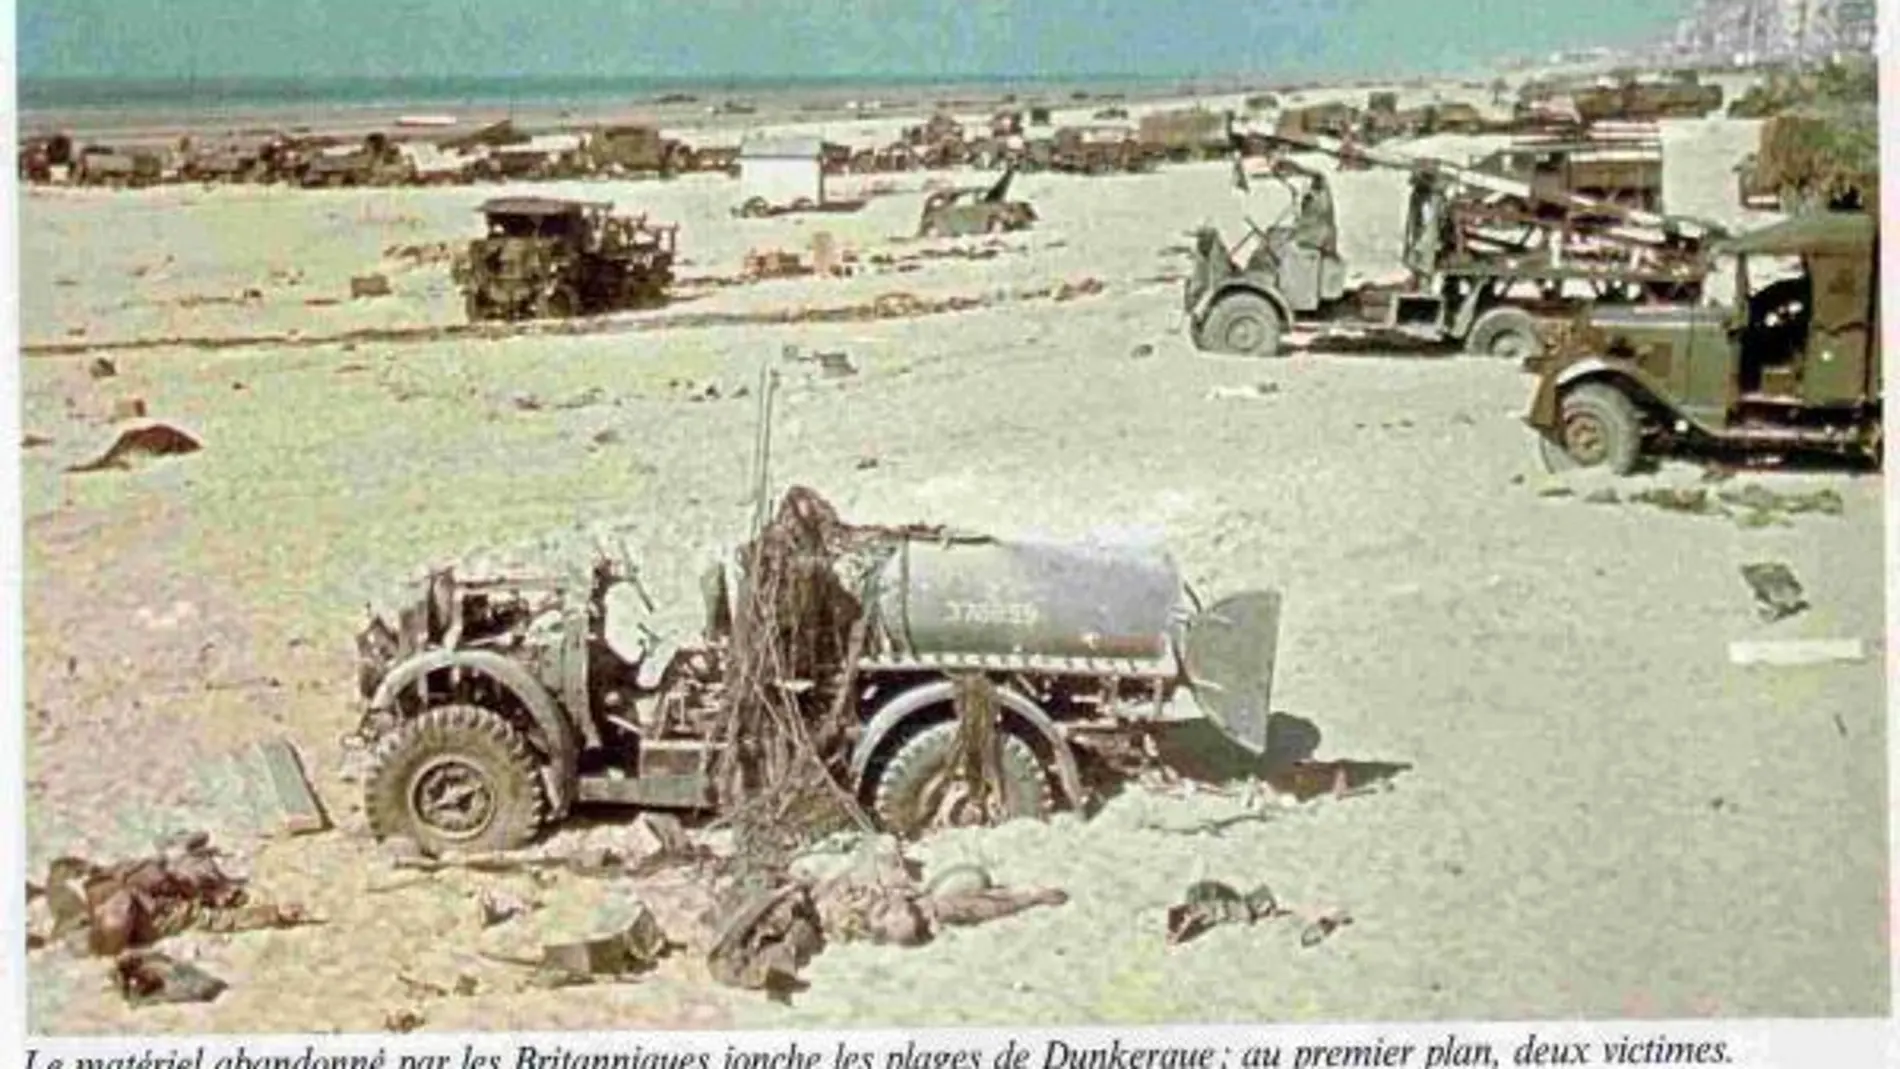 Material de guerra británico abandonado en las playas de Dunkerque